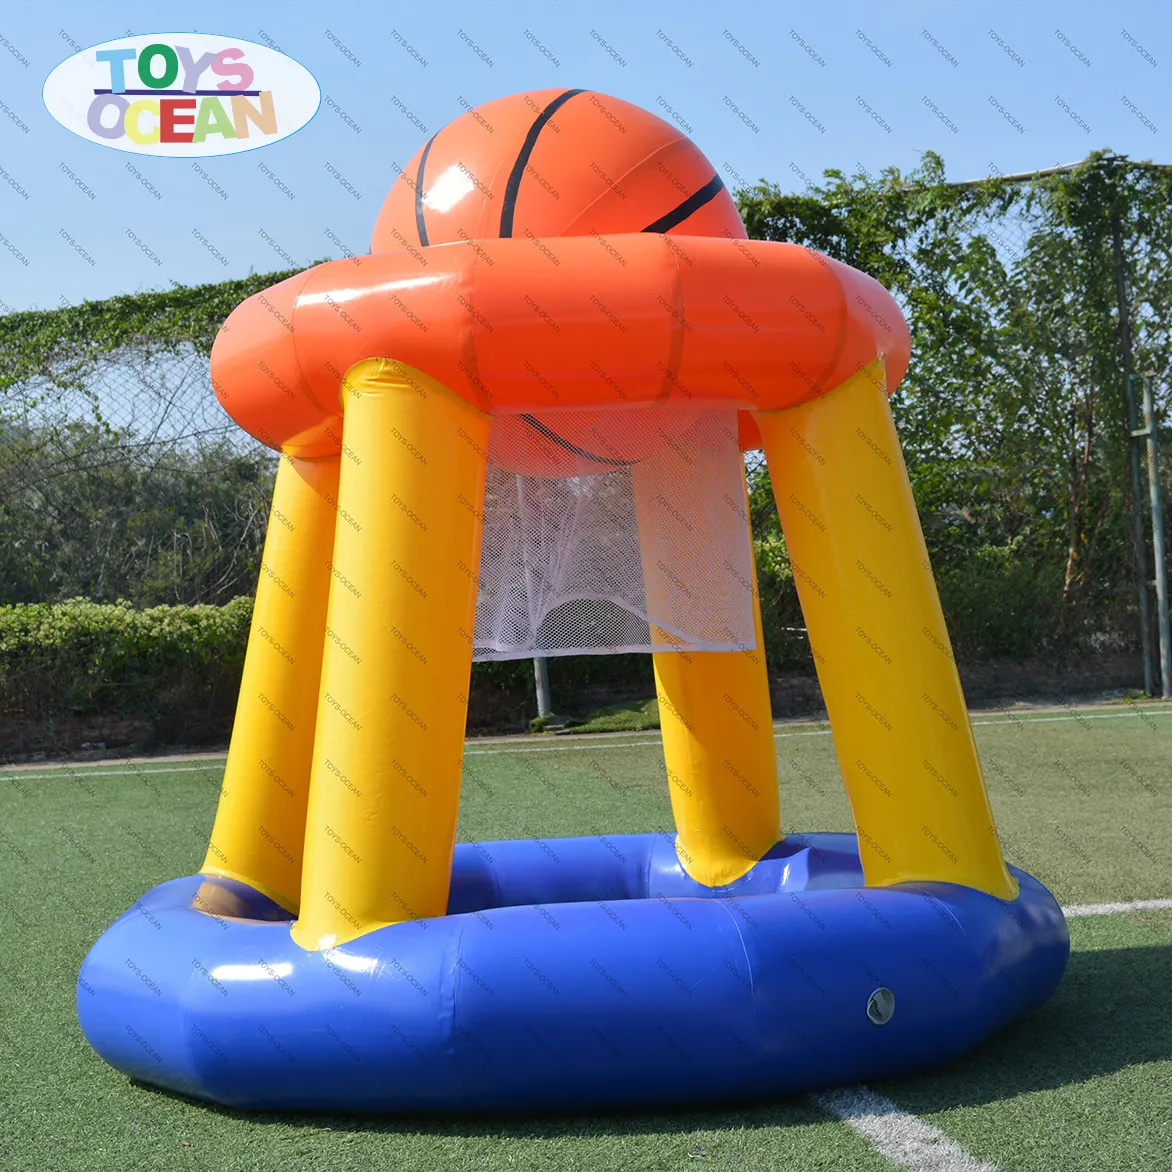 Inflatable basketplus गेंद शूटिंग घेरा खेल के मैदान